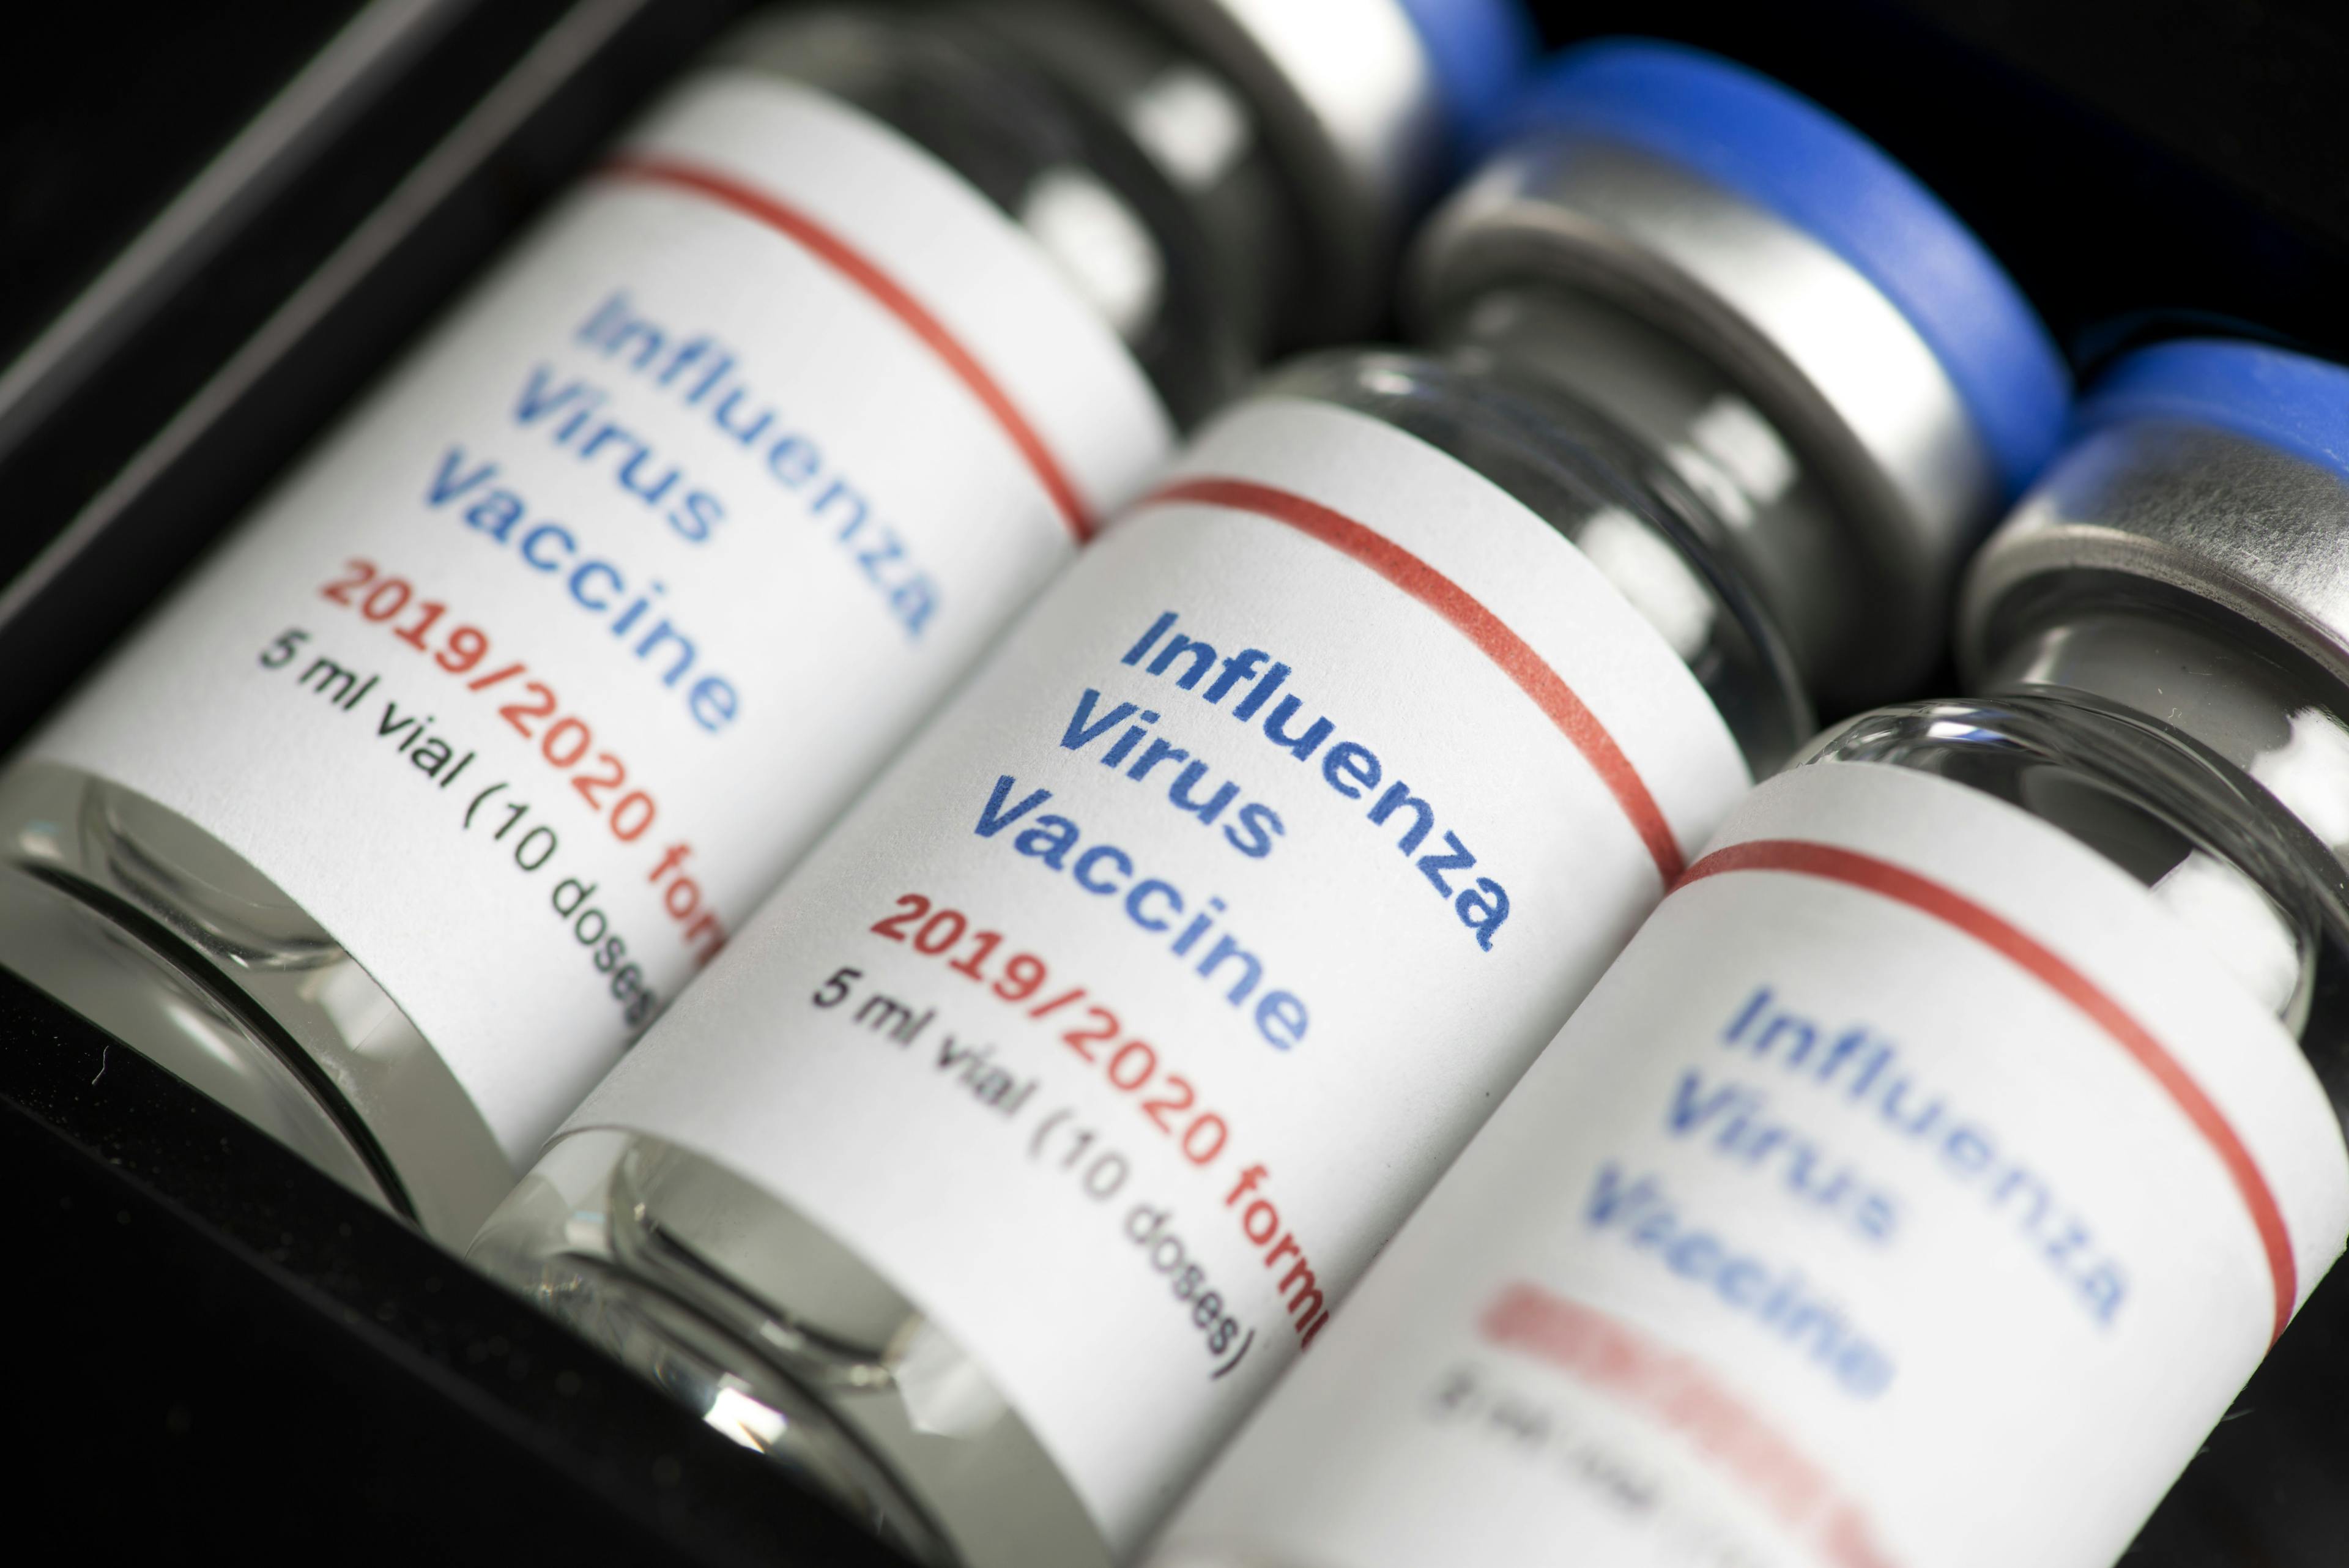 Influenza vaccine vials